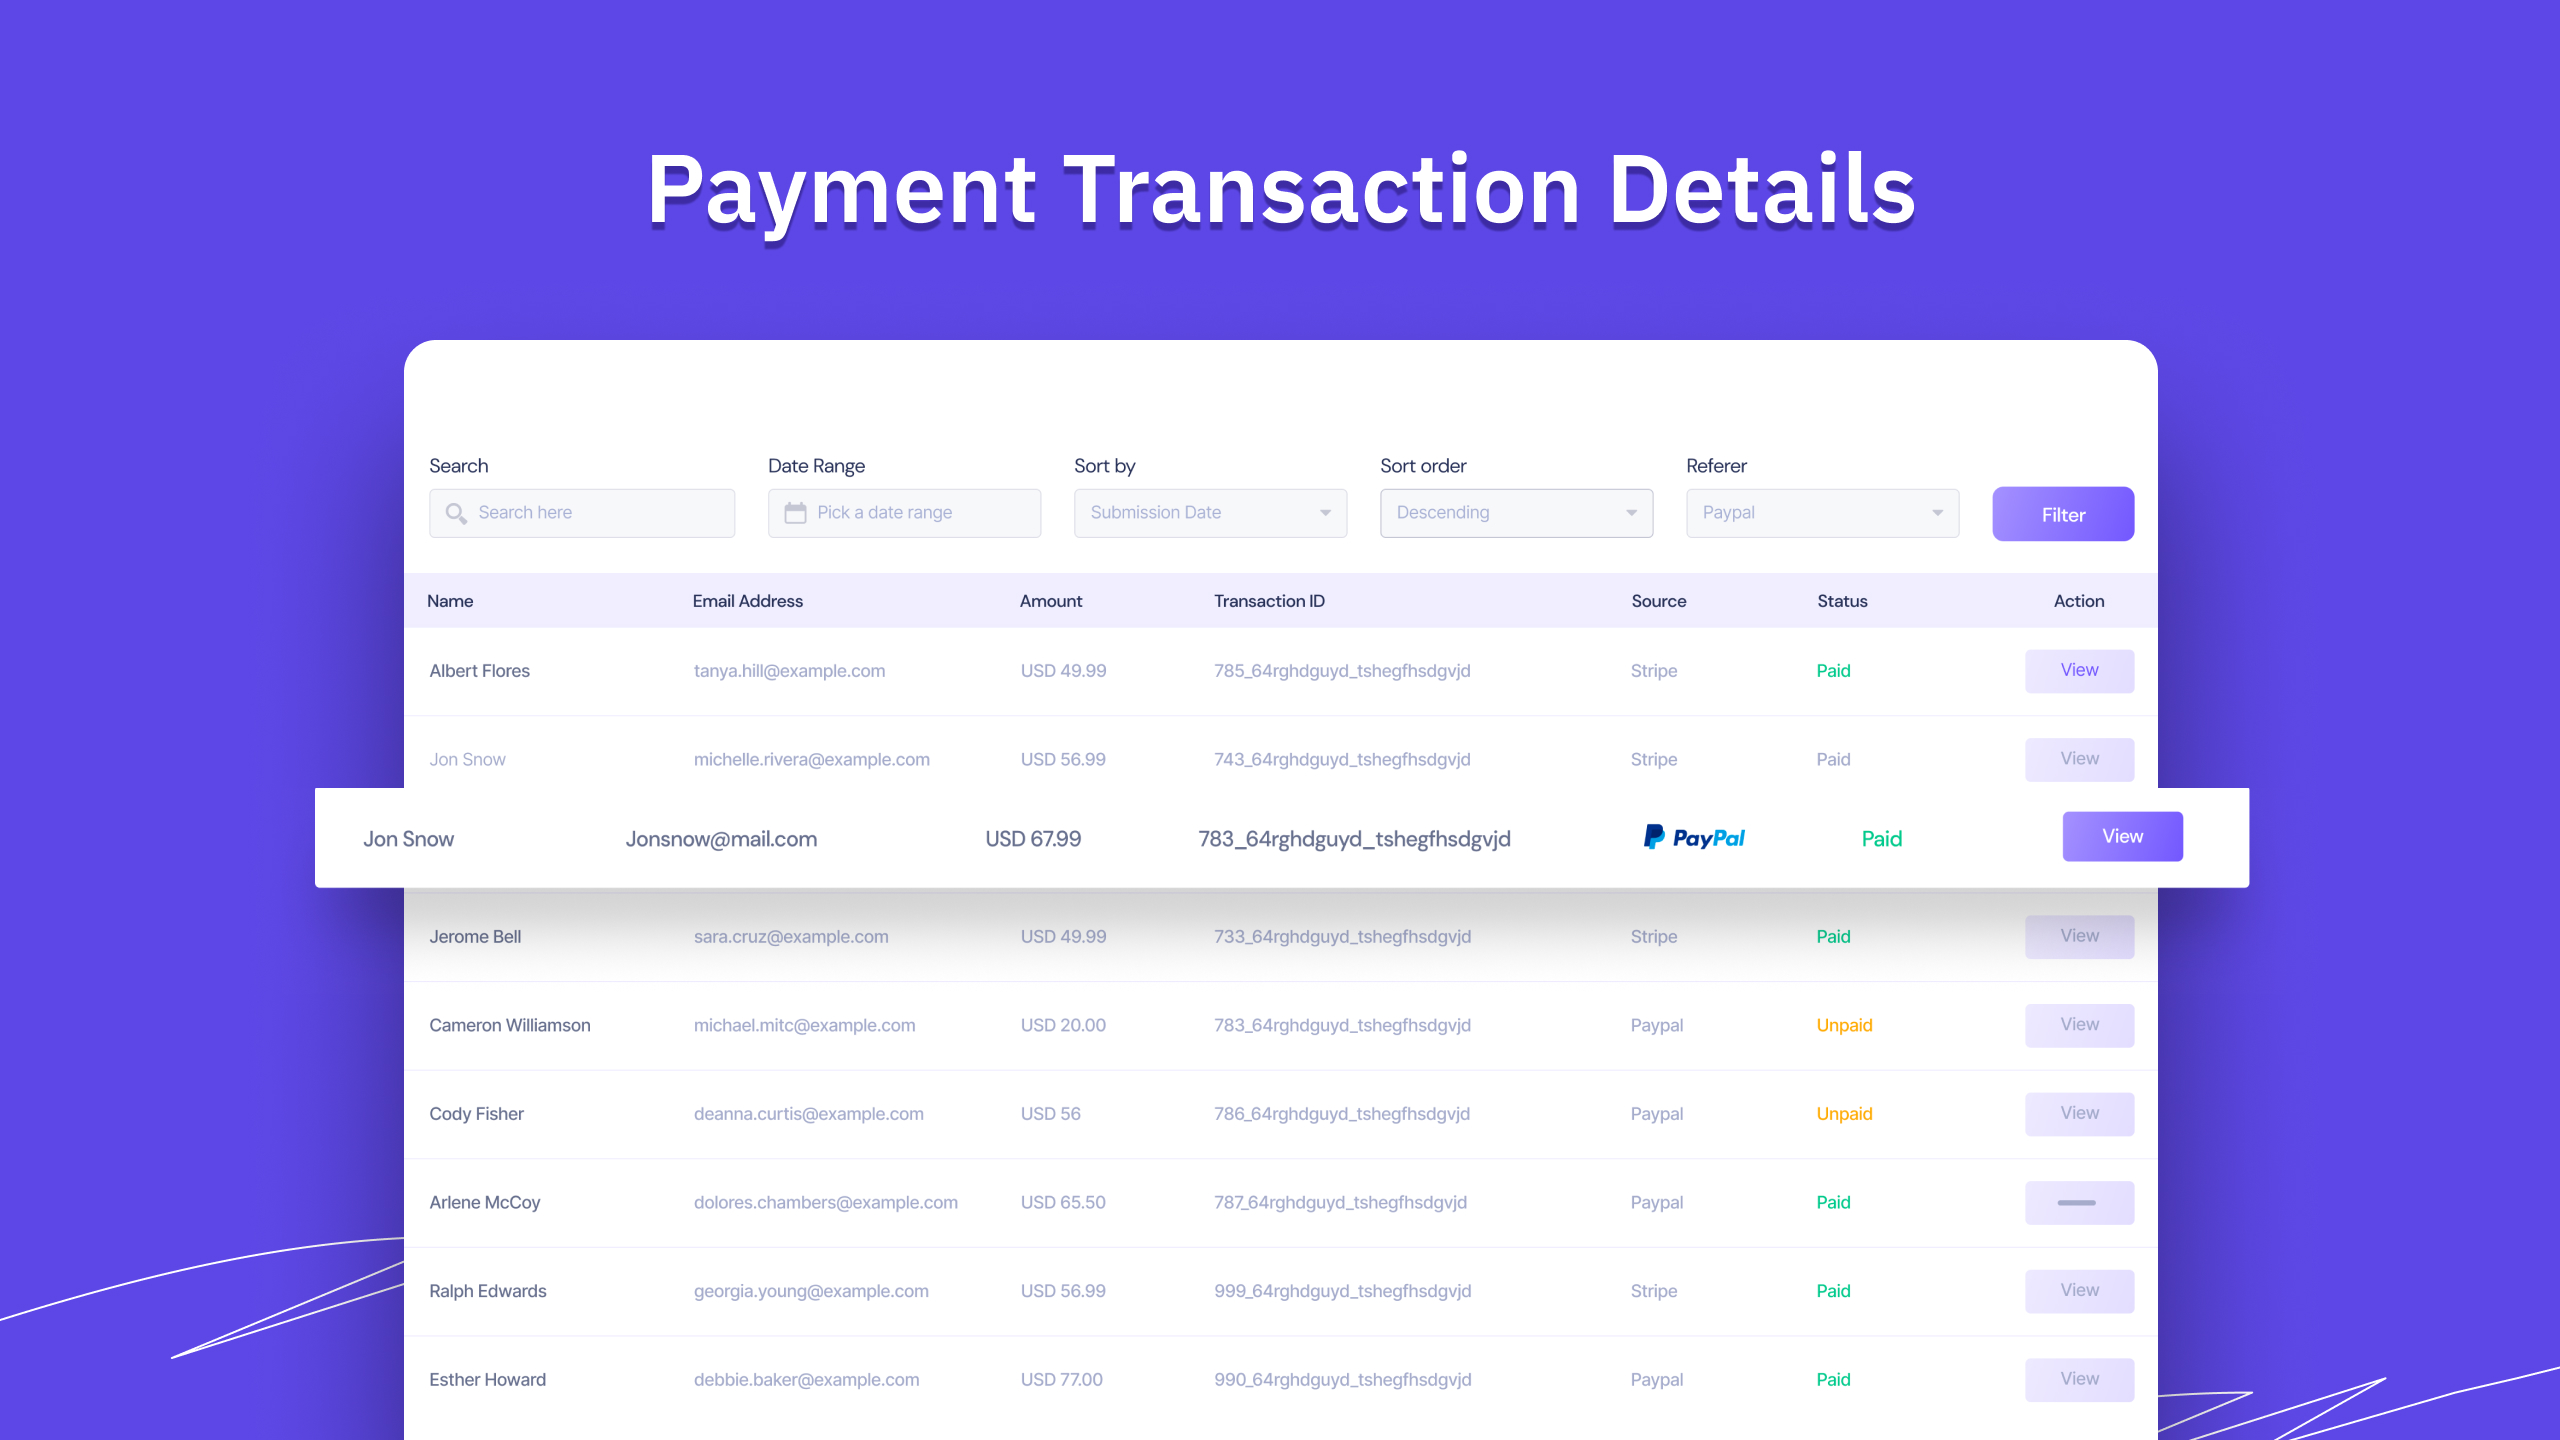 Payment transaction details